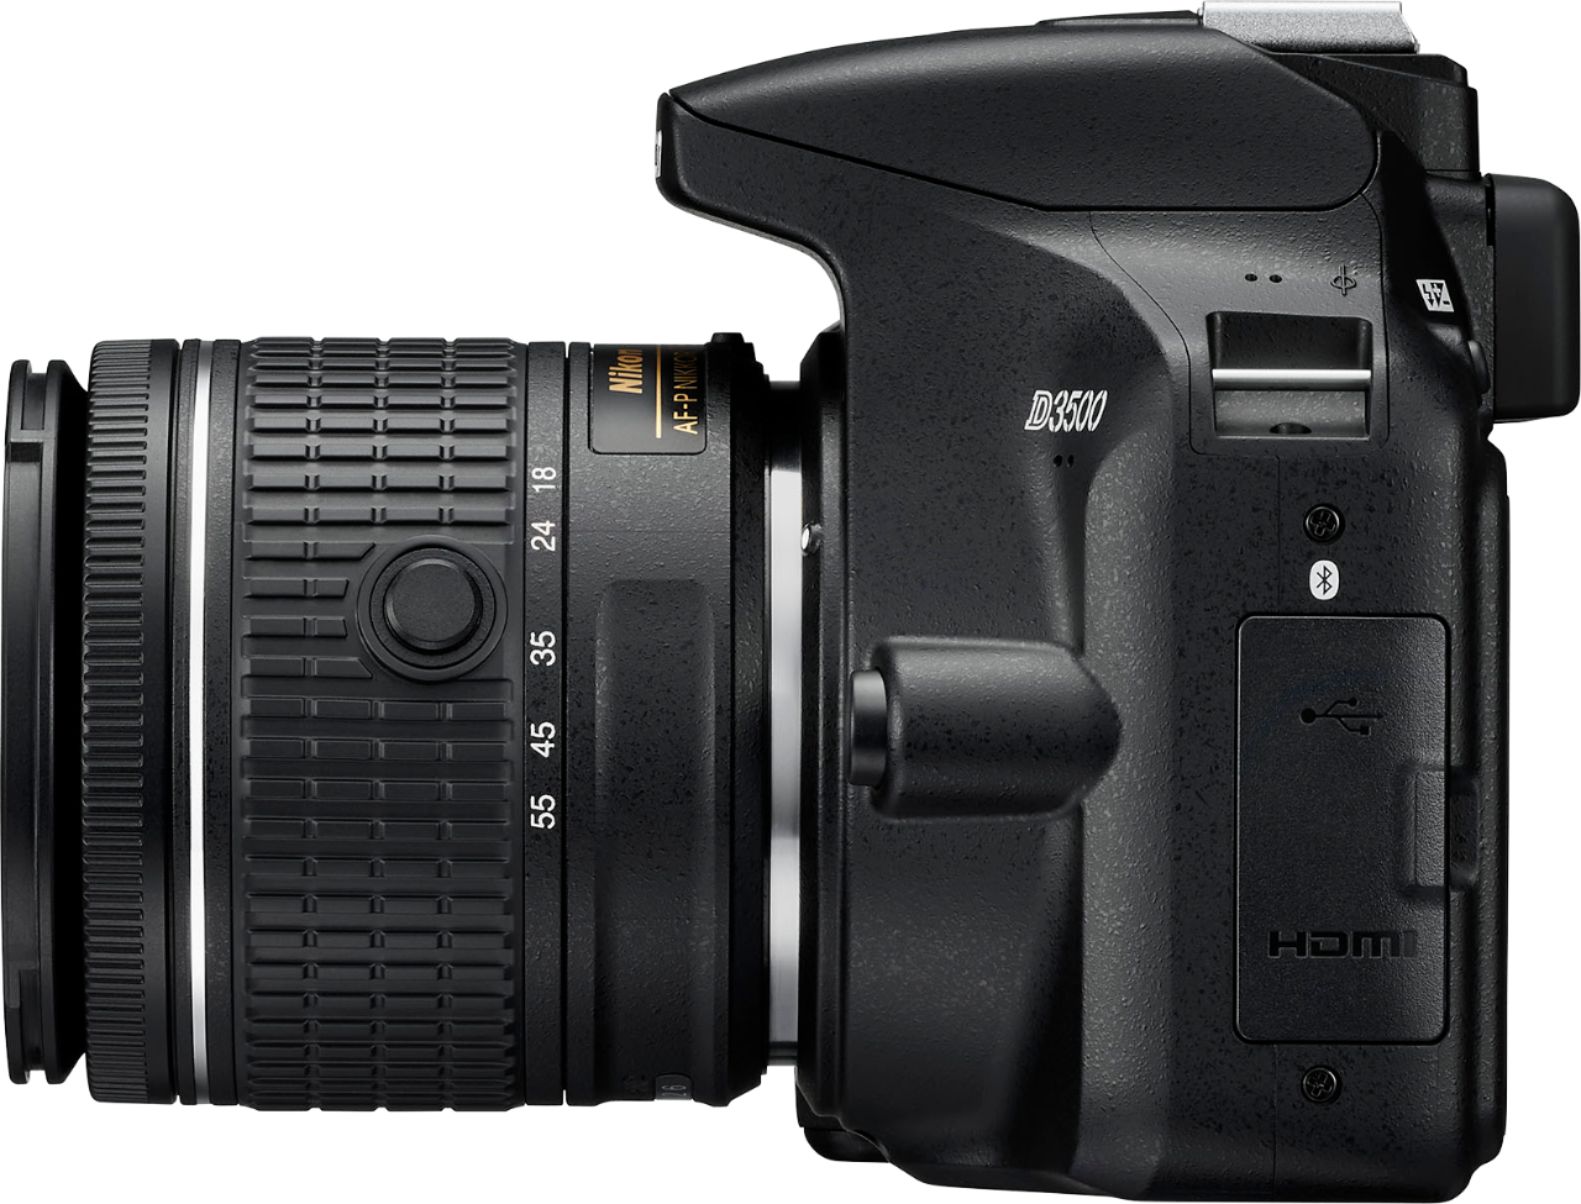 Nikon D3500 Dslr Video Camera With Af P Dx Nikkor 18 55mm F 3 5 5 6g Vr Lens Black 1590 Best Buy